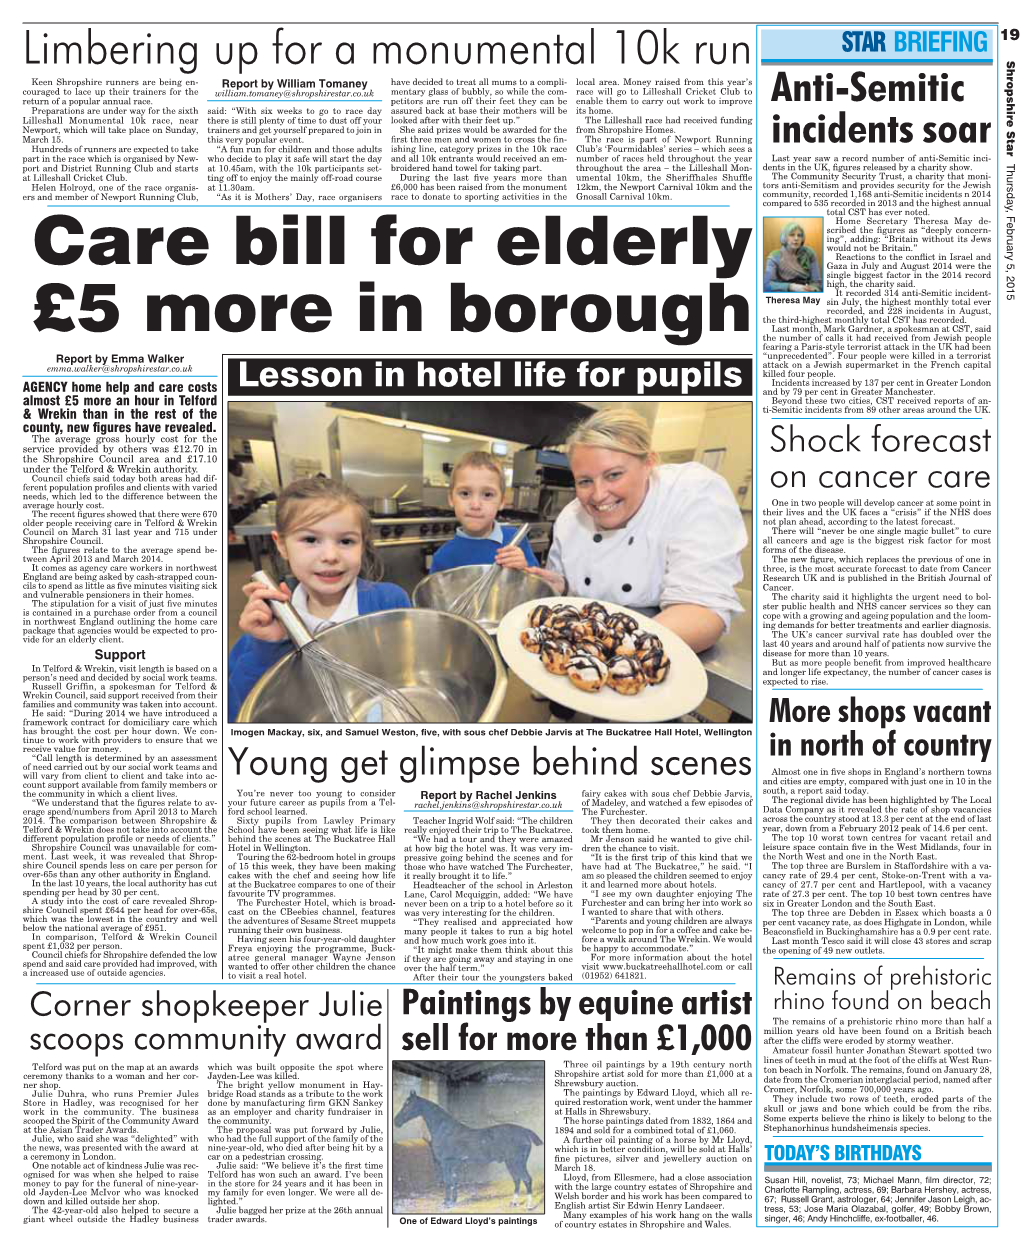 Care Bill for Elderly £5 More in Borough